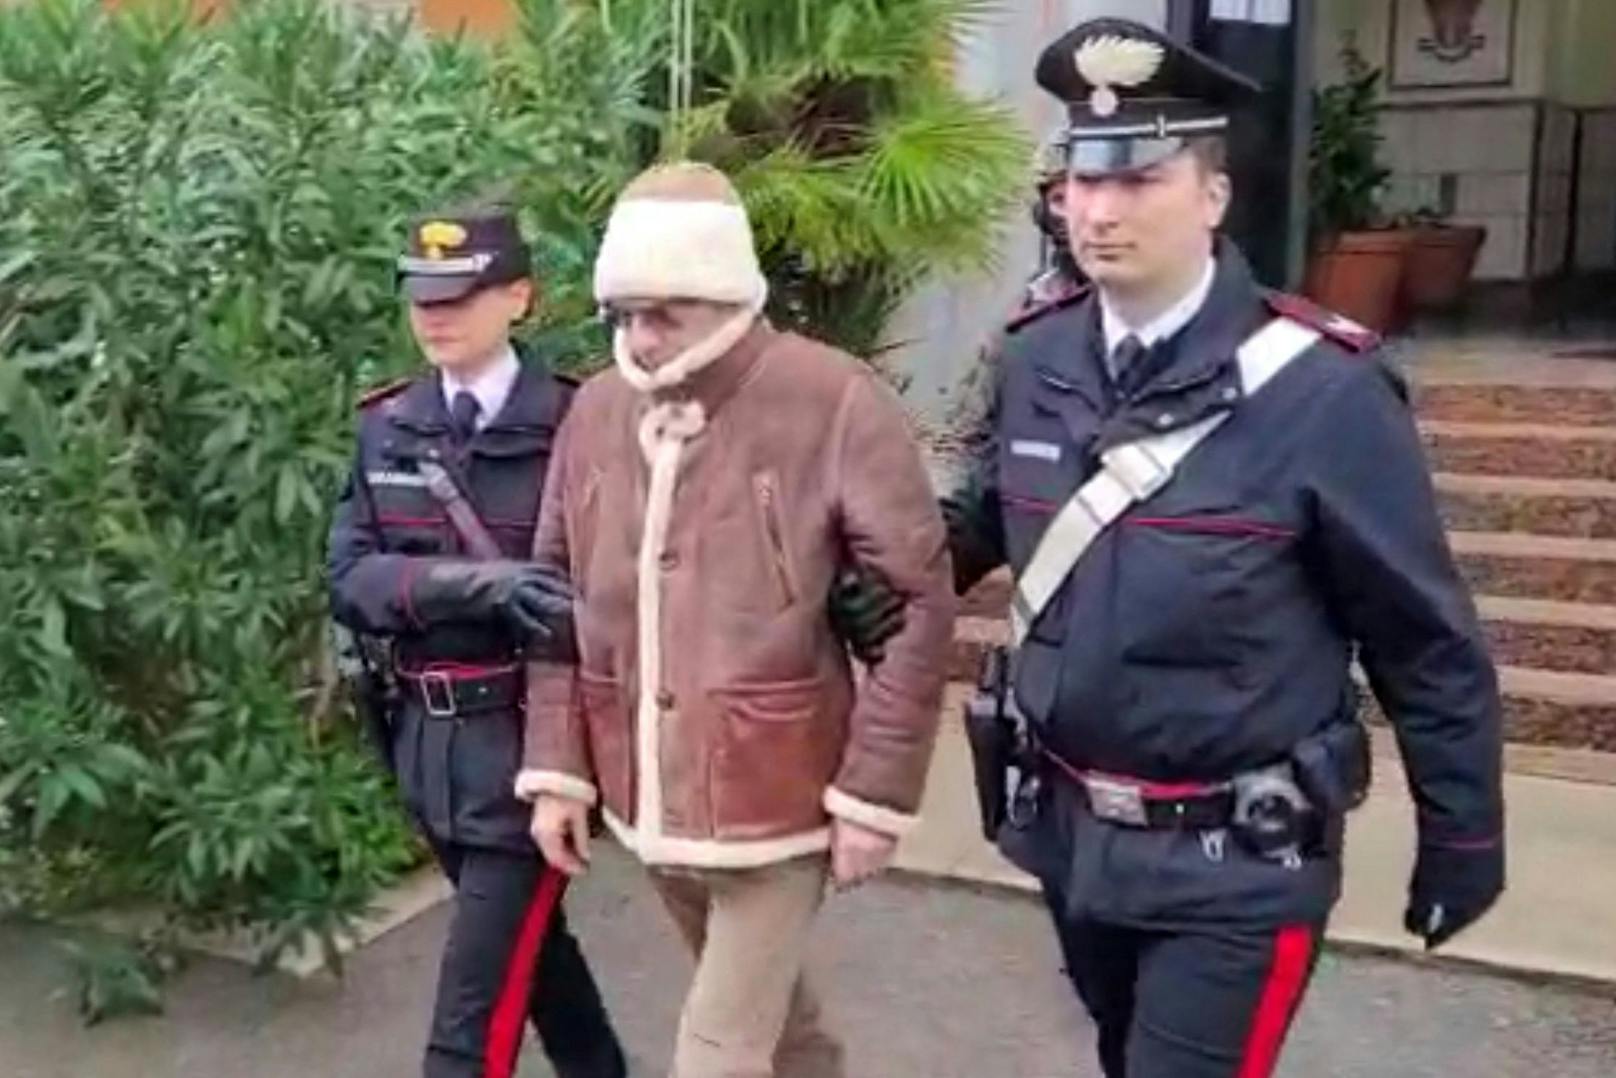 Am Montag wurde das Versteck des 60-Jährigen gefunden. Der akribisch Gesuchte versteckte sich in der Ortschaft Campobello di Mazara unweit der Stadt Trapani, einer Hochburg der sizilianischen Cosa Nostra.